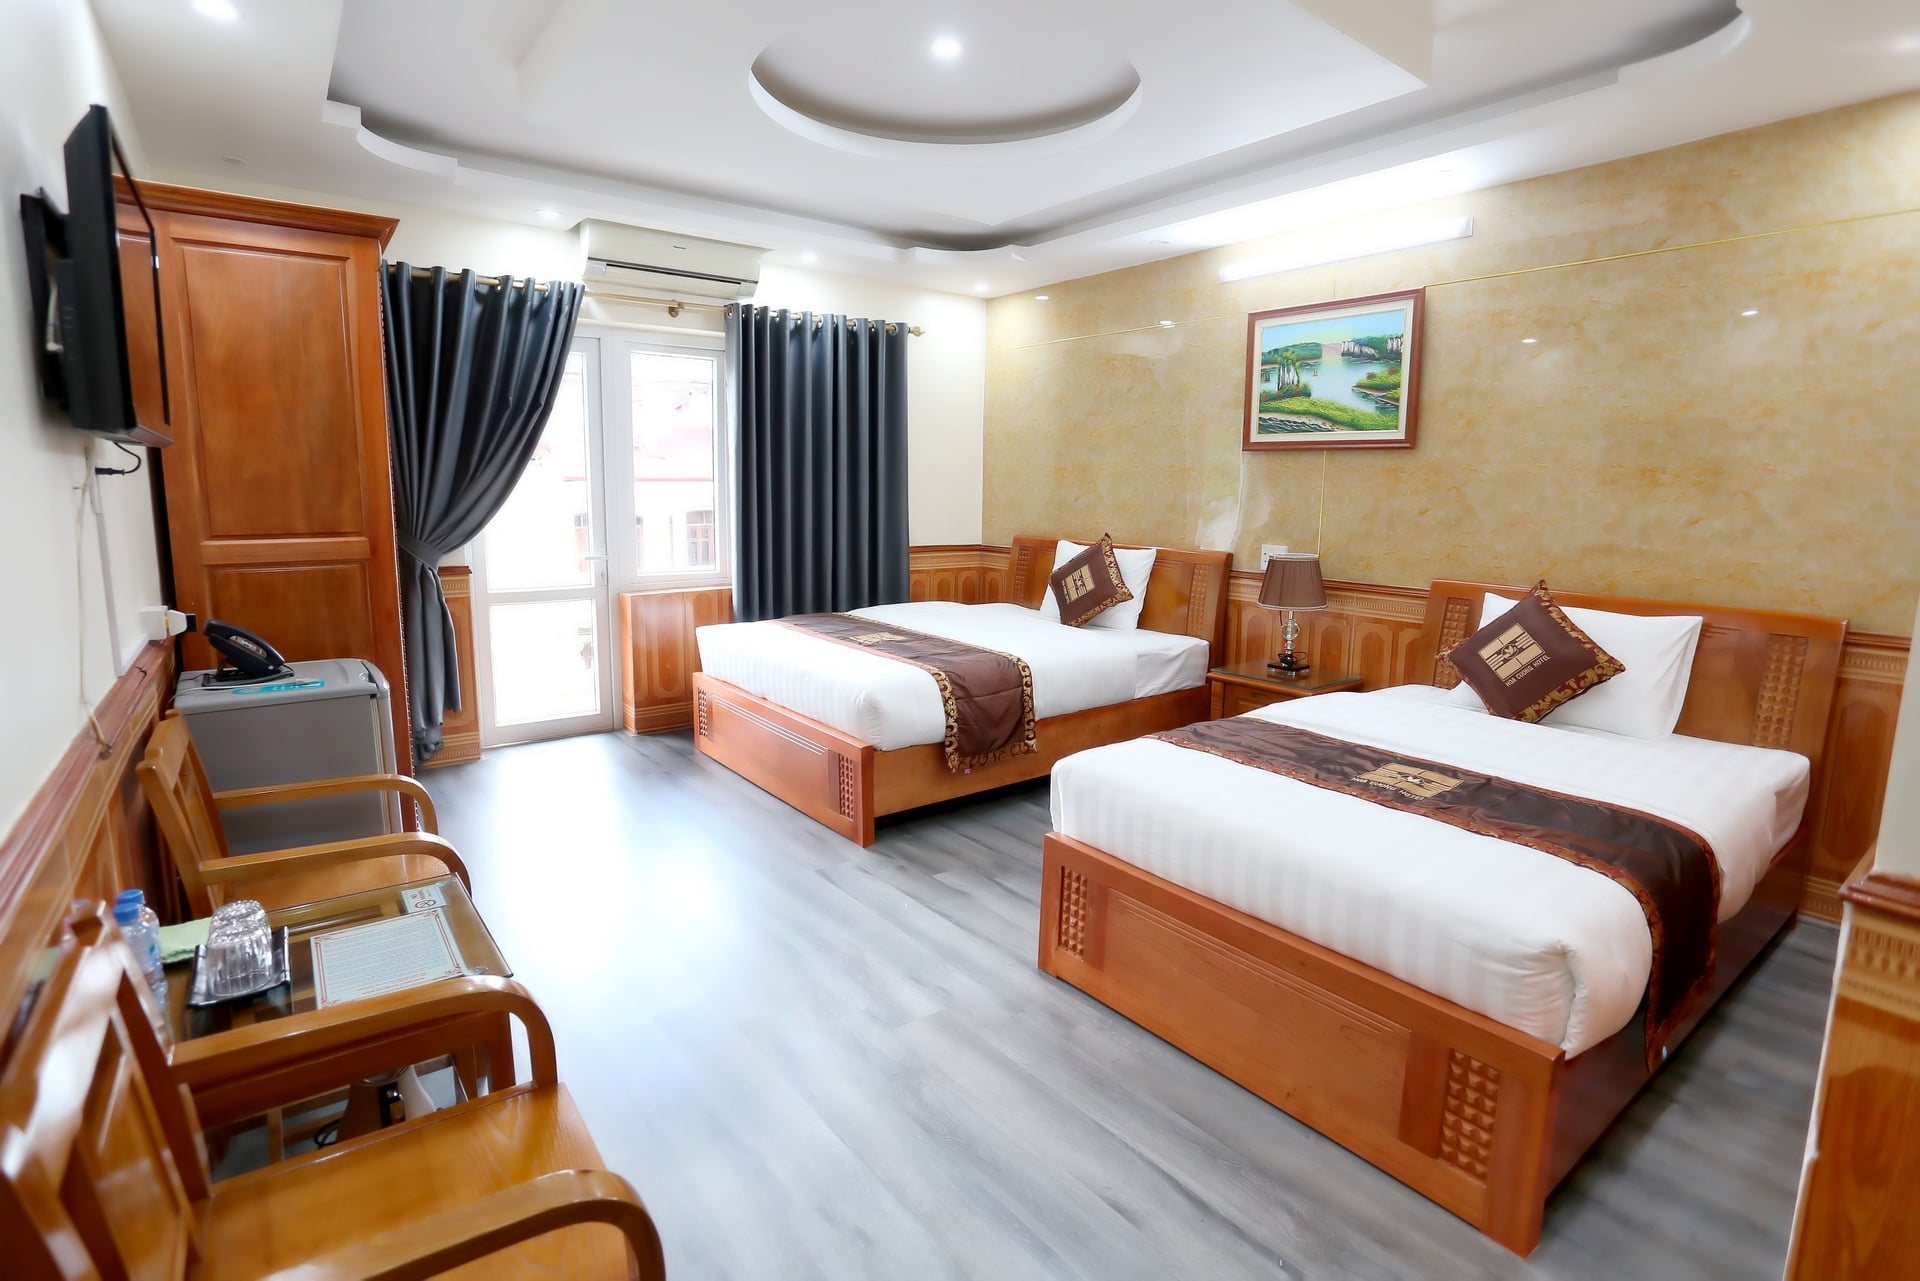 Khách sạn Đồng Văn Hoa Cương 3 sao - Hà Giang